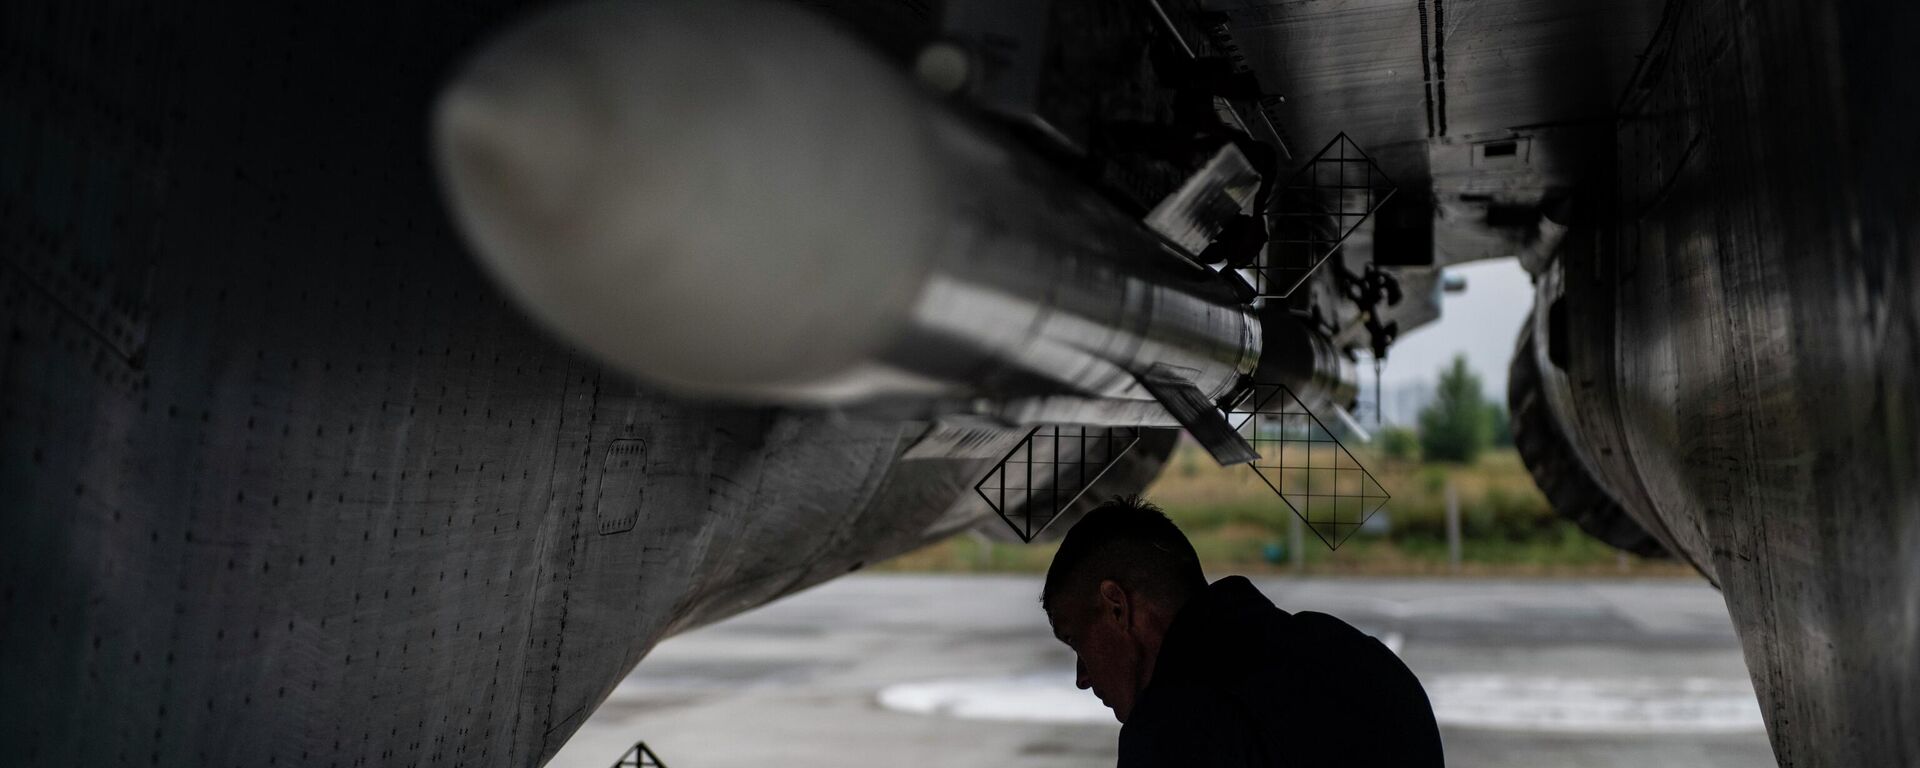 Истребитель Су-35 ВКС России на аэродроме базирования в зоне проведения спецоперации - Sputnik Латвия, 1920, 20.07.2022